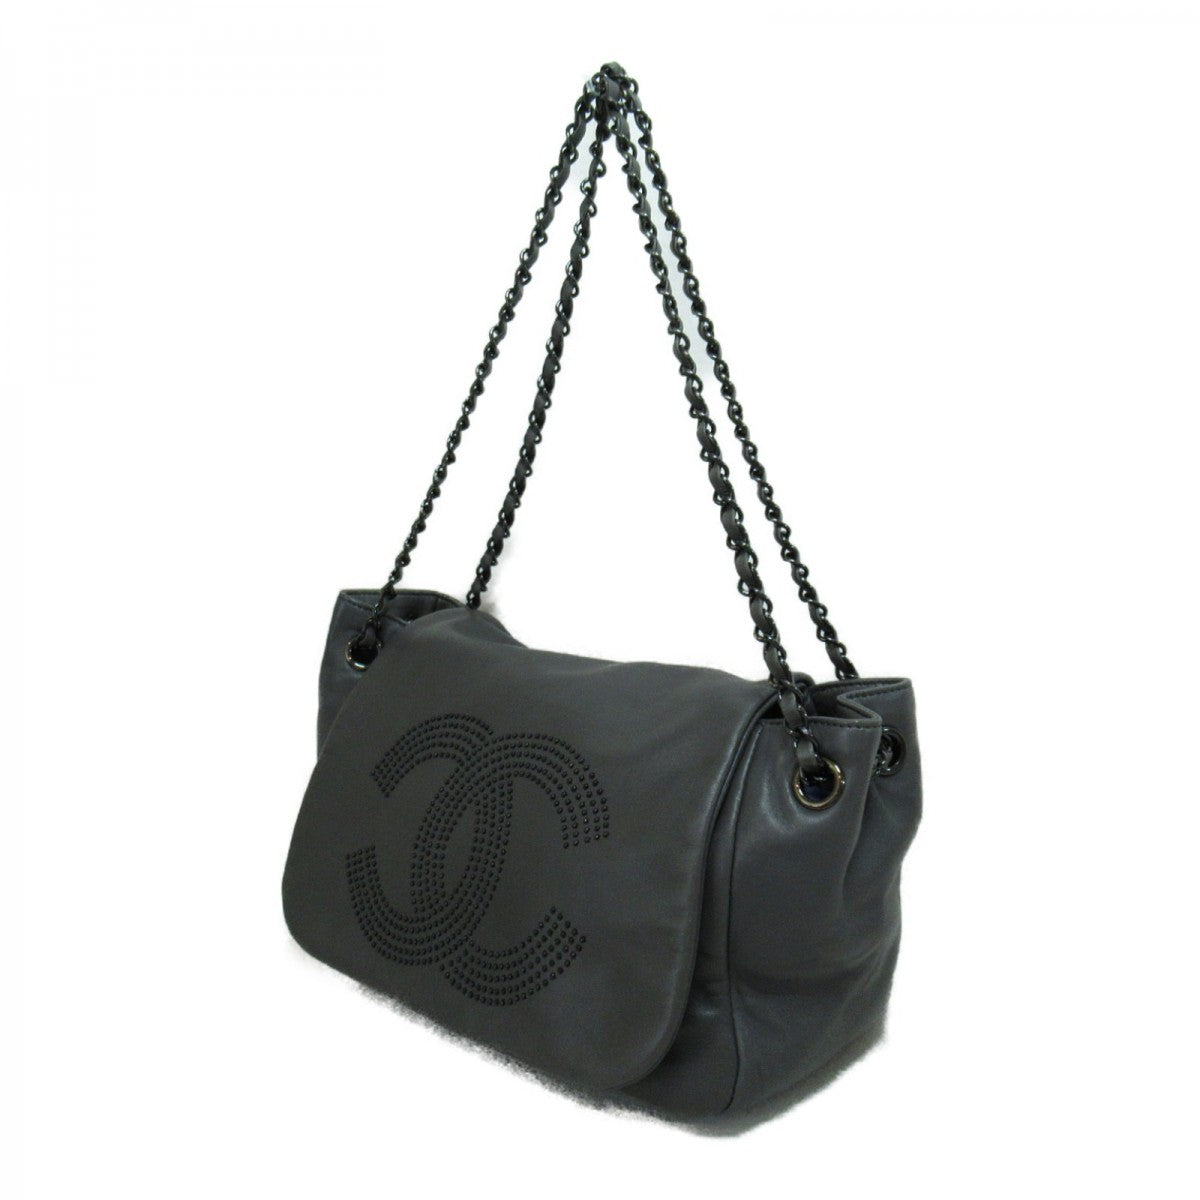 CC Leather Chain Flap Shoulder Bag